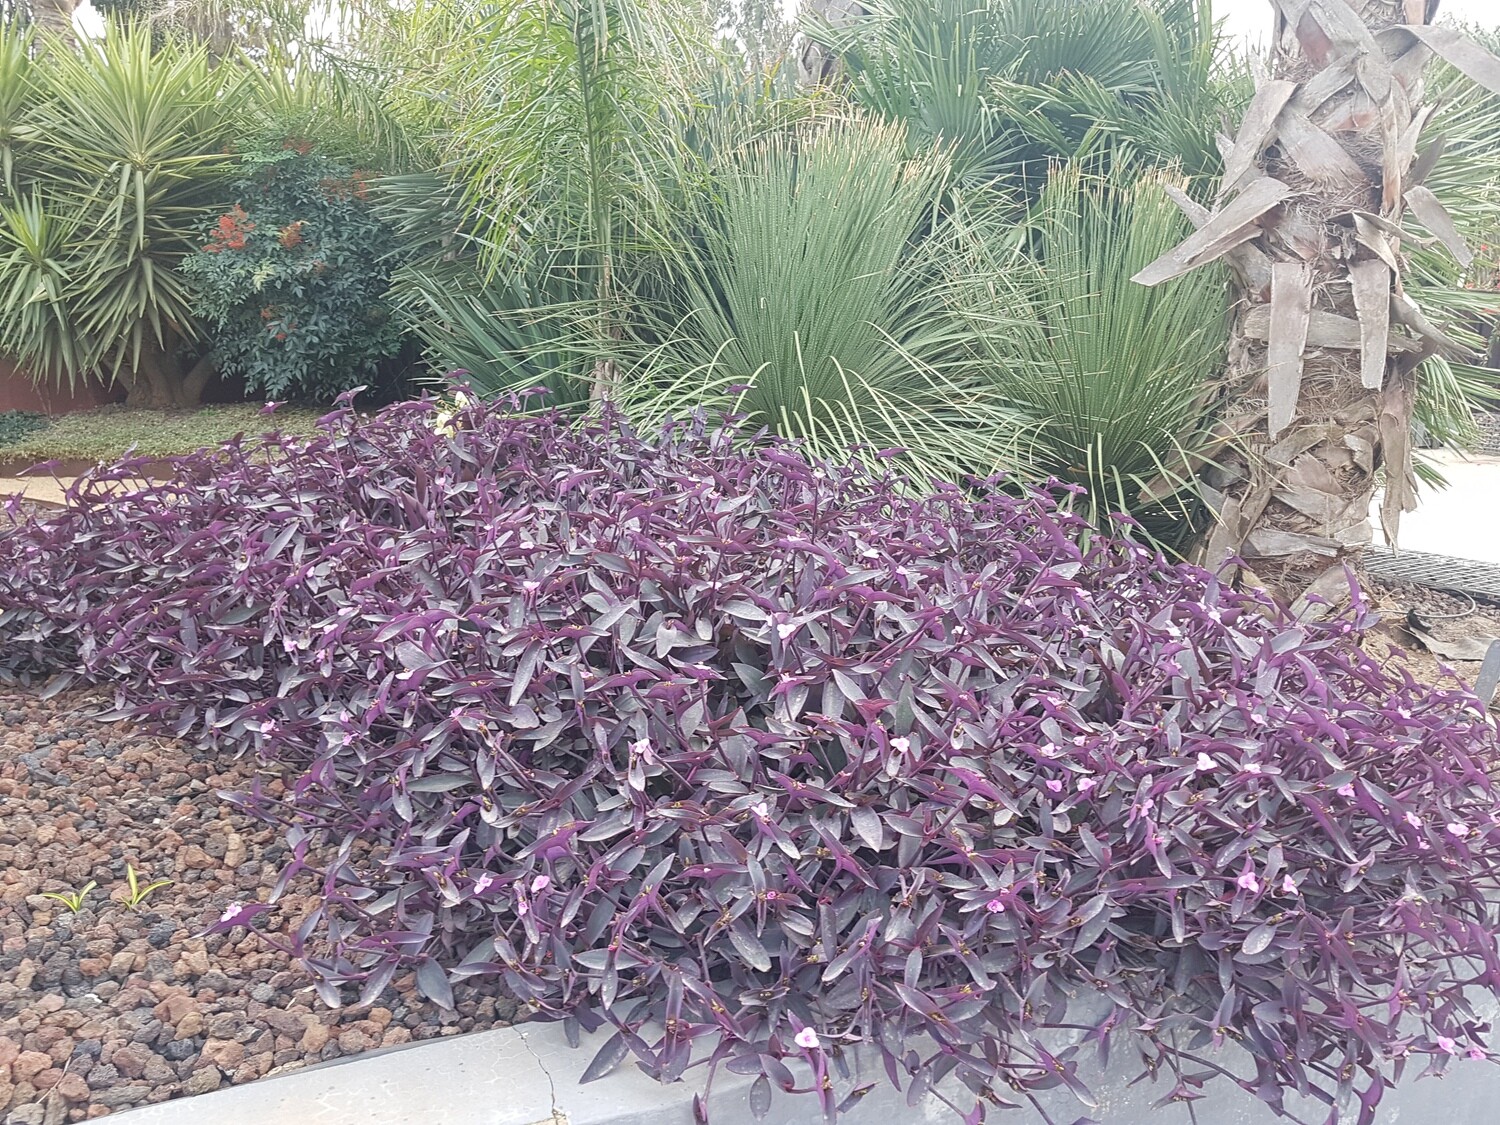 "AmaPlant Tradescantia Purpurea" purpurina o amor de hombre, exotica y de un color muy especial 20-30 cm 2,5 L (purpura) - Interior o exterior con sol y sin frio - ENVIO INCLUIDO